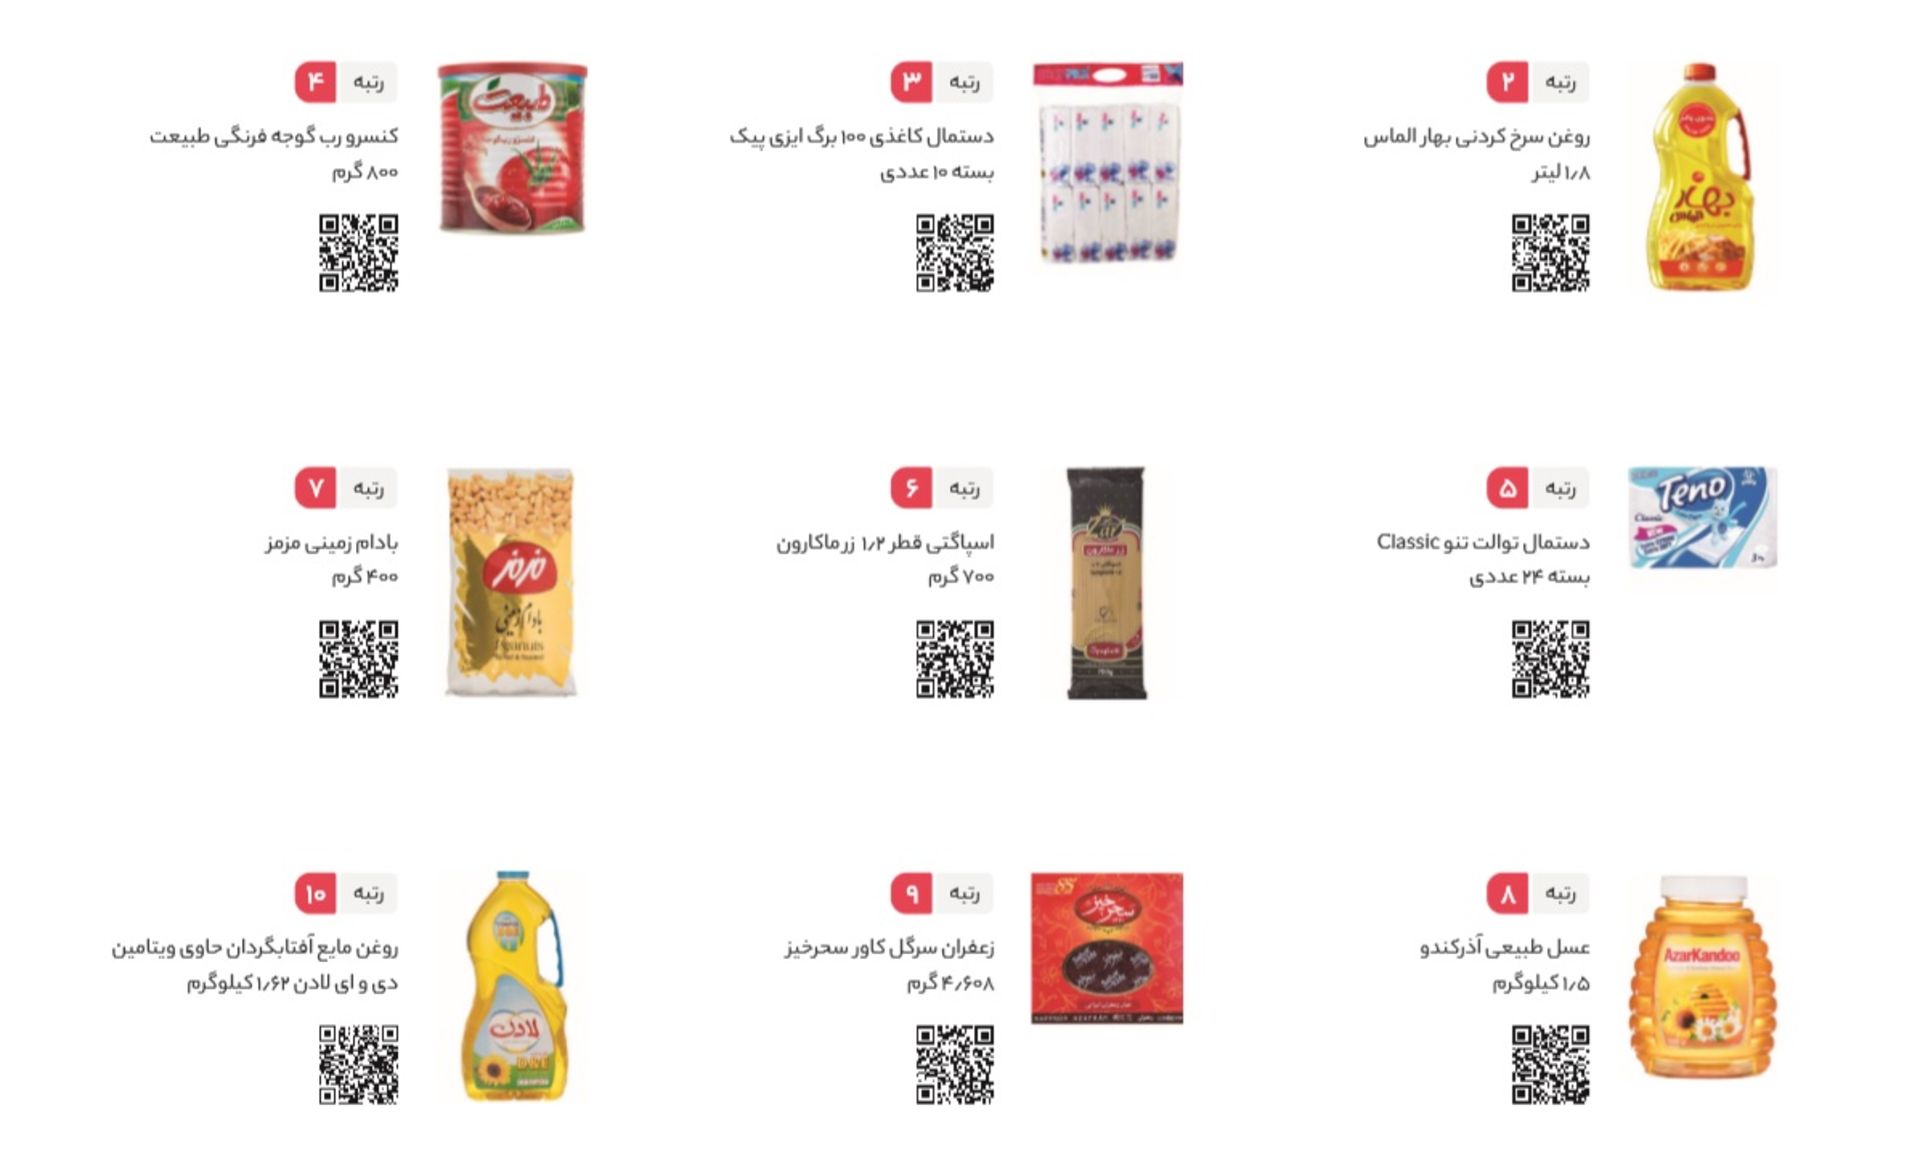 فهرست پرفروش ترین کالاهای سوپرمارکتی دیجی کالا ازنظر تعداد